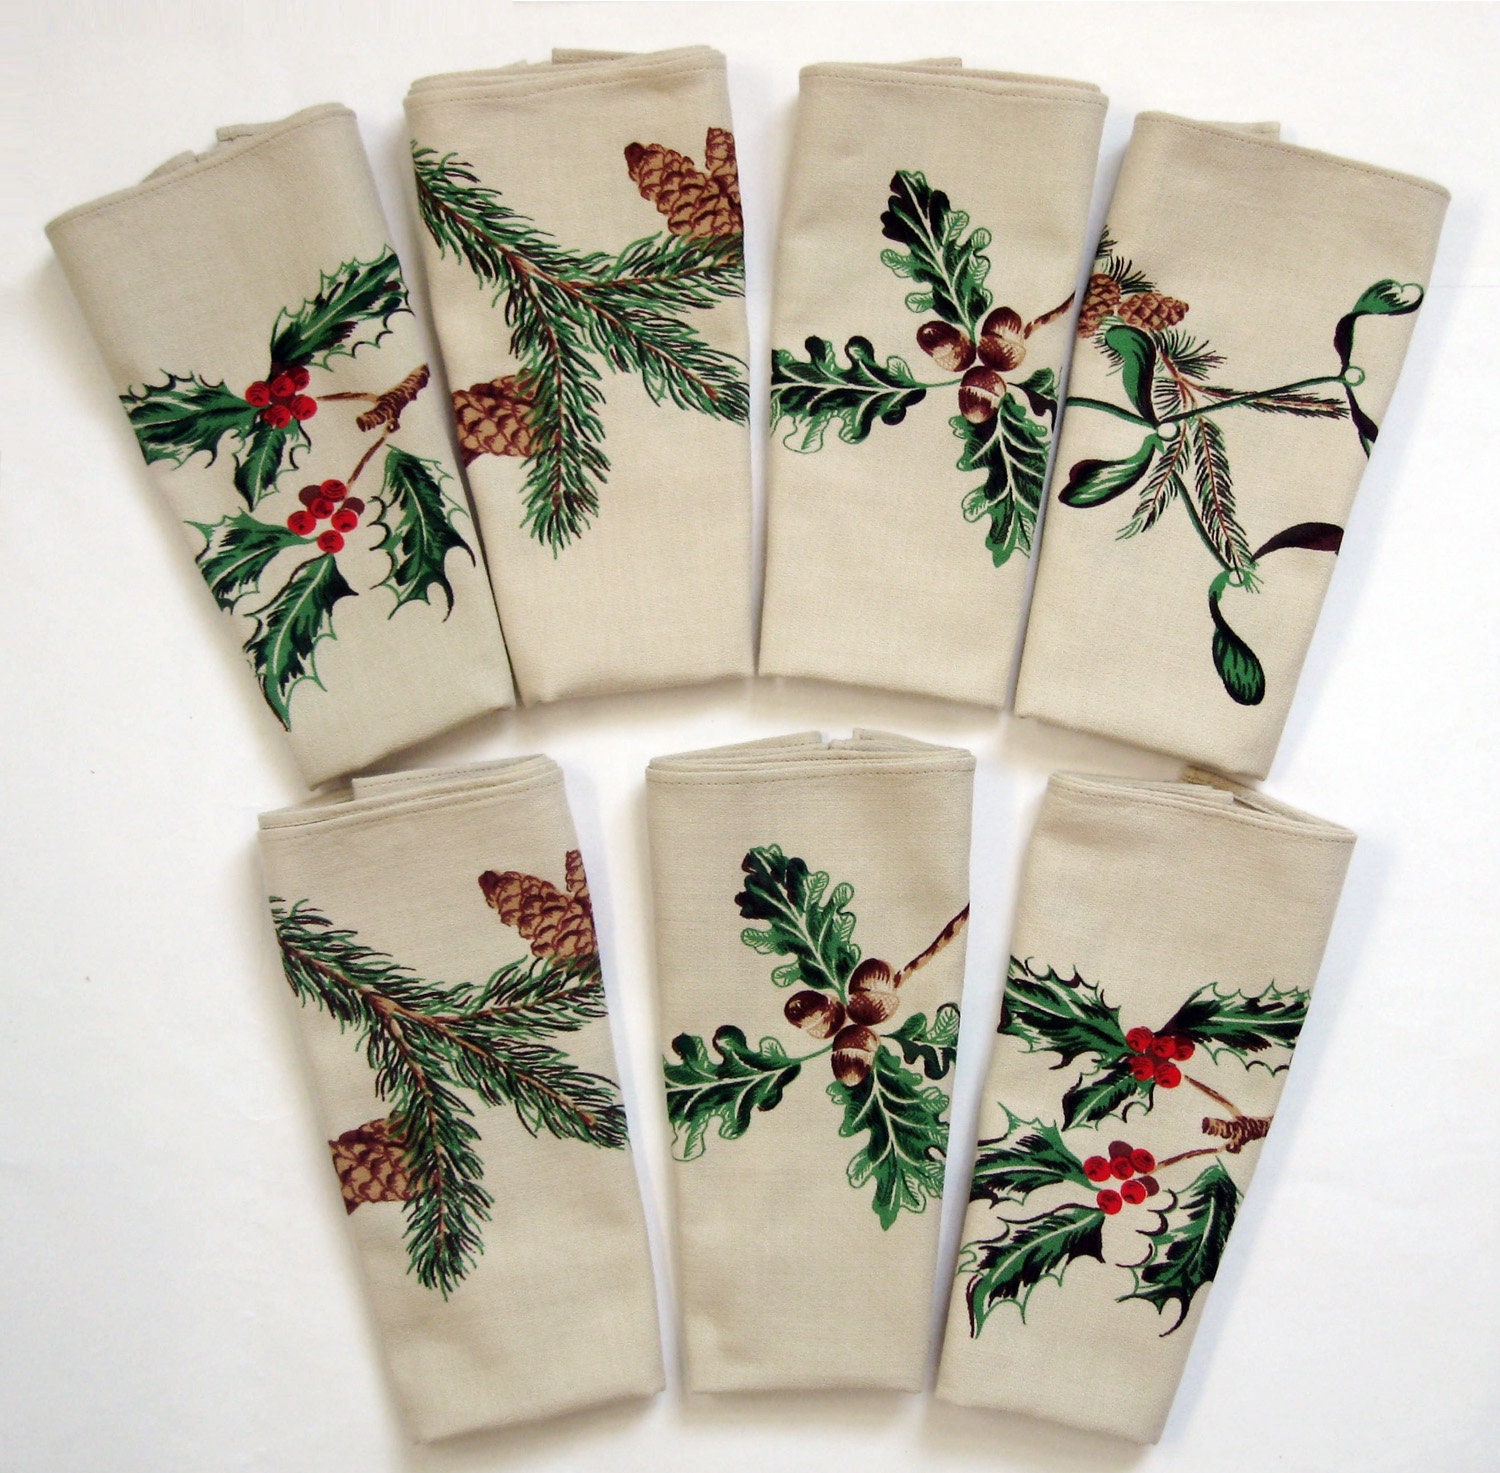 7 Serviettes de Table Noël en Coton Mercerisé - Motifs Branches Houx , Sapin, Chêne et Gui Vintage A